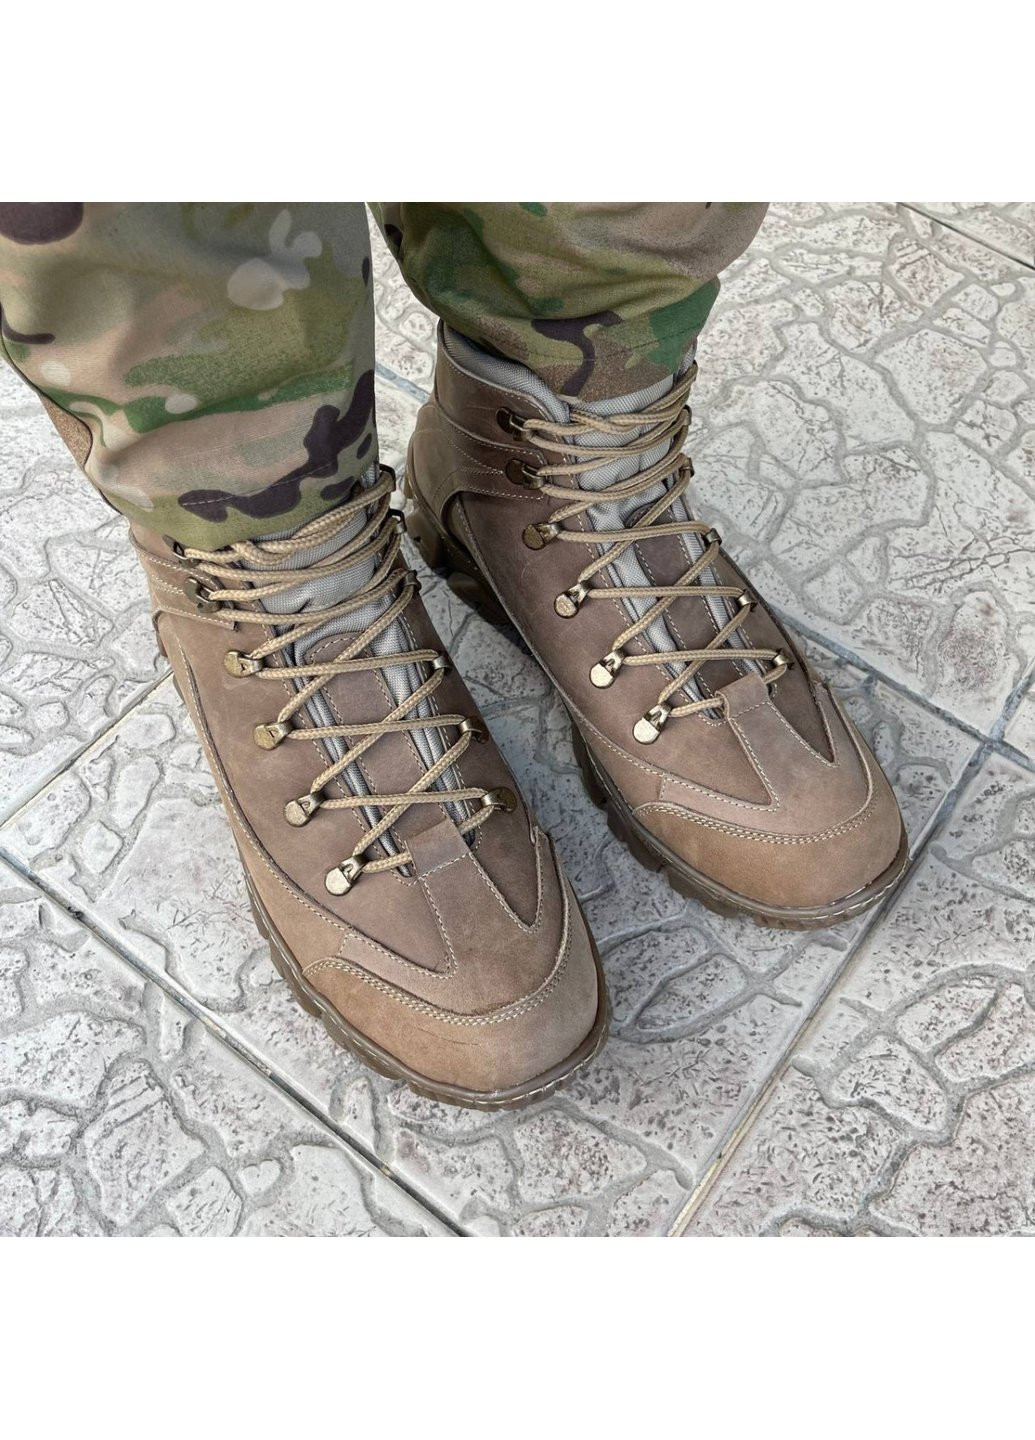 Коричневые осенние ботинки военные тактические всу (зсу) 7523 44 р 29 см коричневые Power